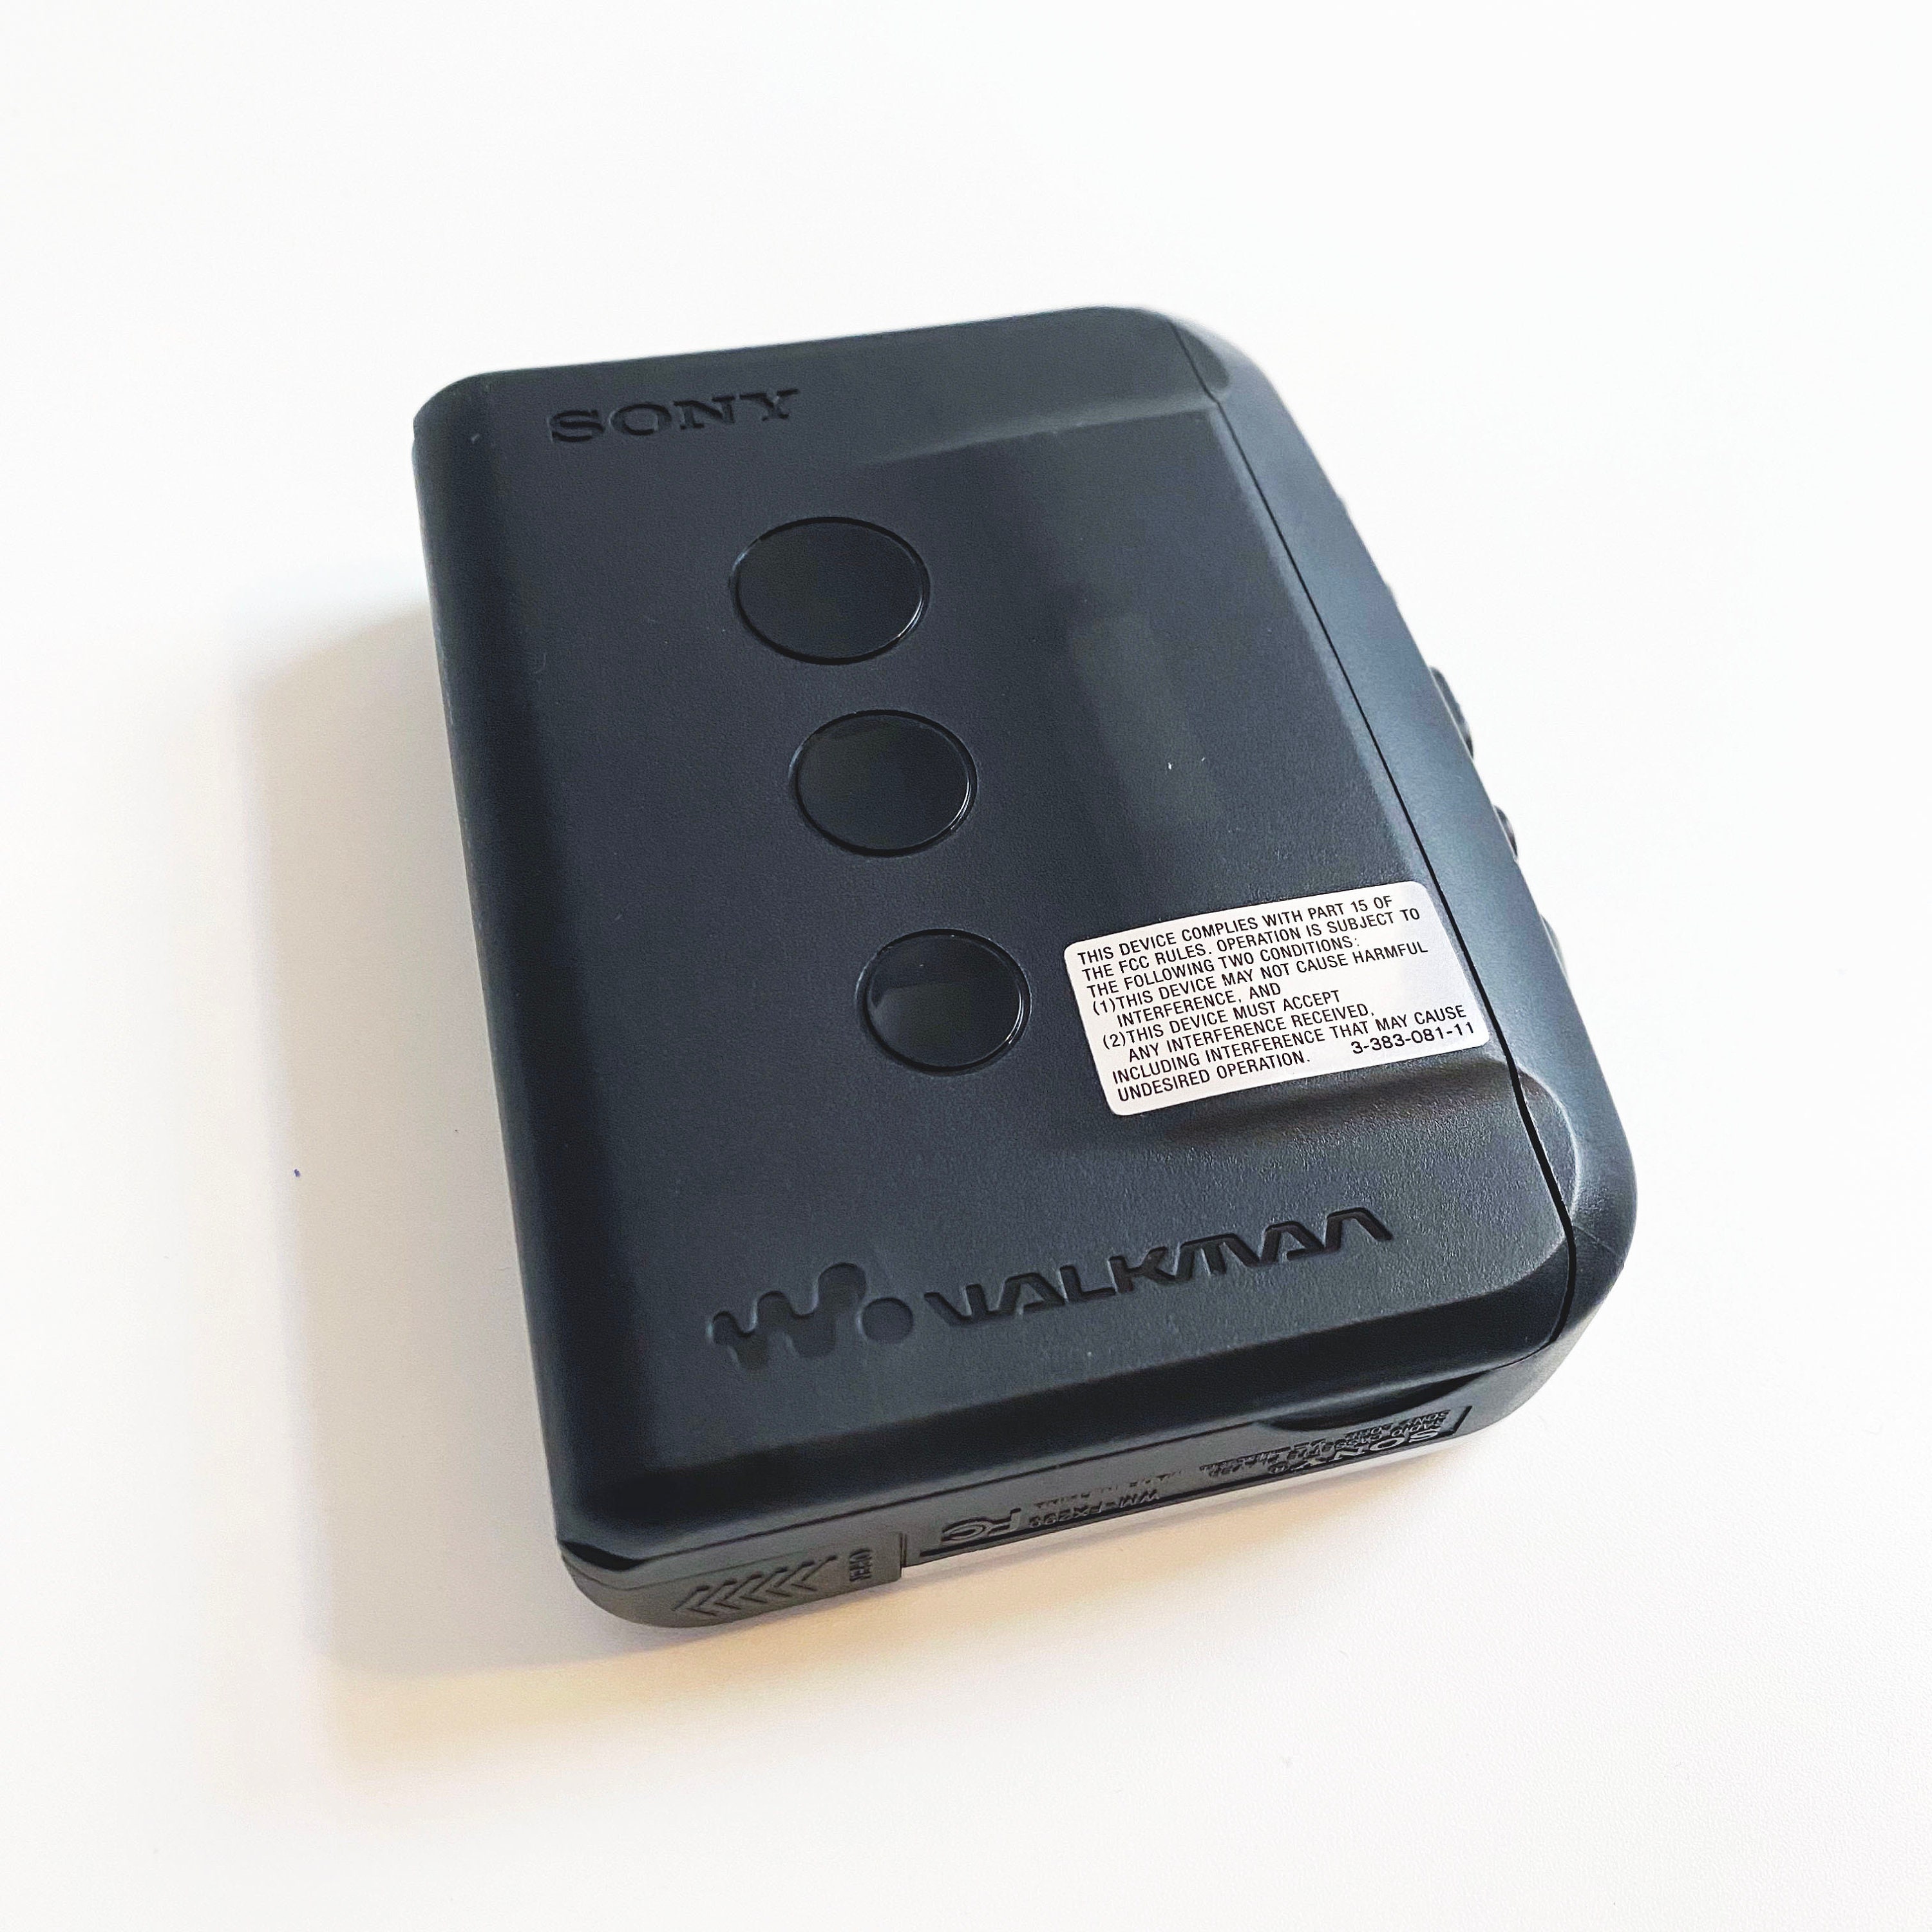 Sony WM-DD9 Used Walkman DD Quartz Portable Cassette Player Rare Tested  Working